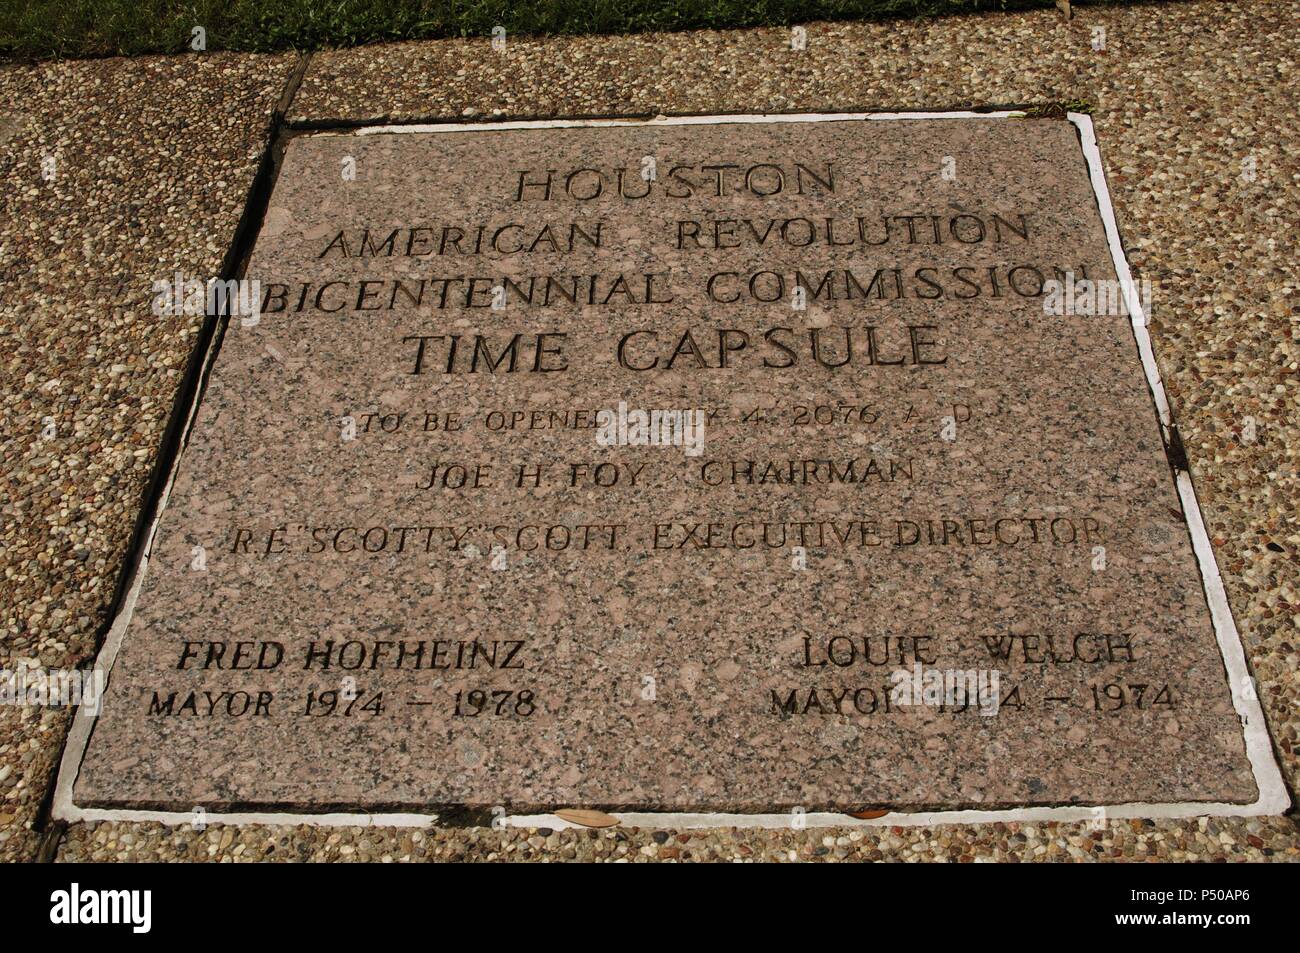 PLACA en el lugar donde está enterrada una CAPSULA DEL TIEMPO, que deberá abrirse el 4 de julio de 2076. Parque Sam Houston. HOUSTON. Estado de Texas. Estados Unidos. Stock Photo